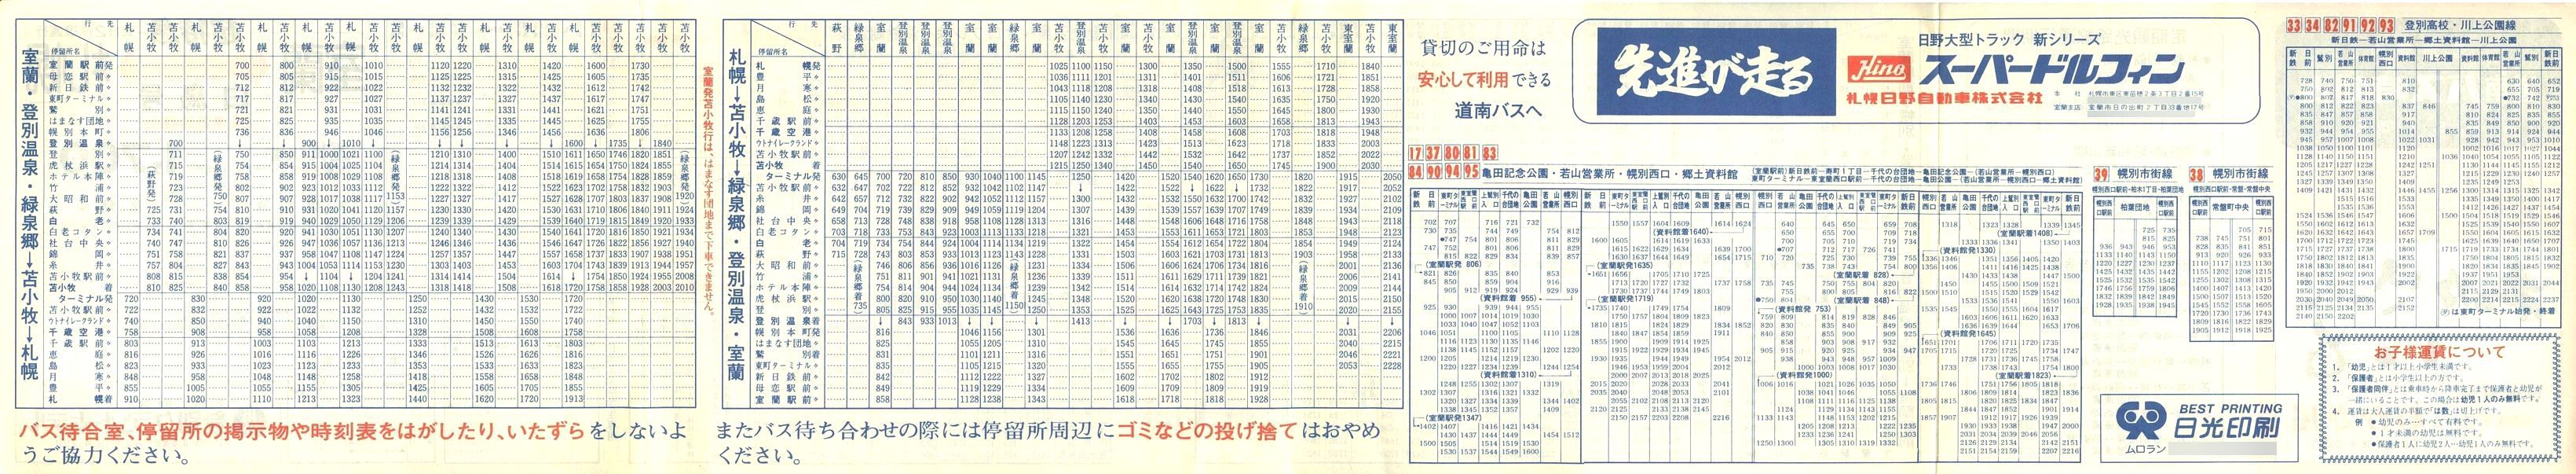 1984-05-07改正_道南バス_登別管内時刻表裏面